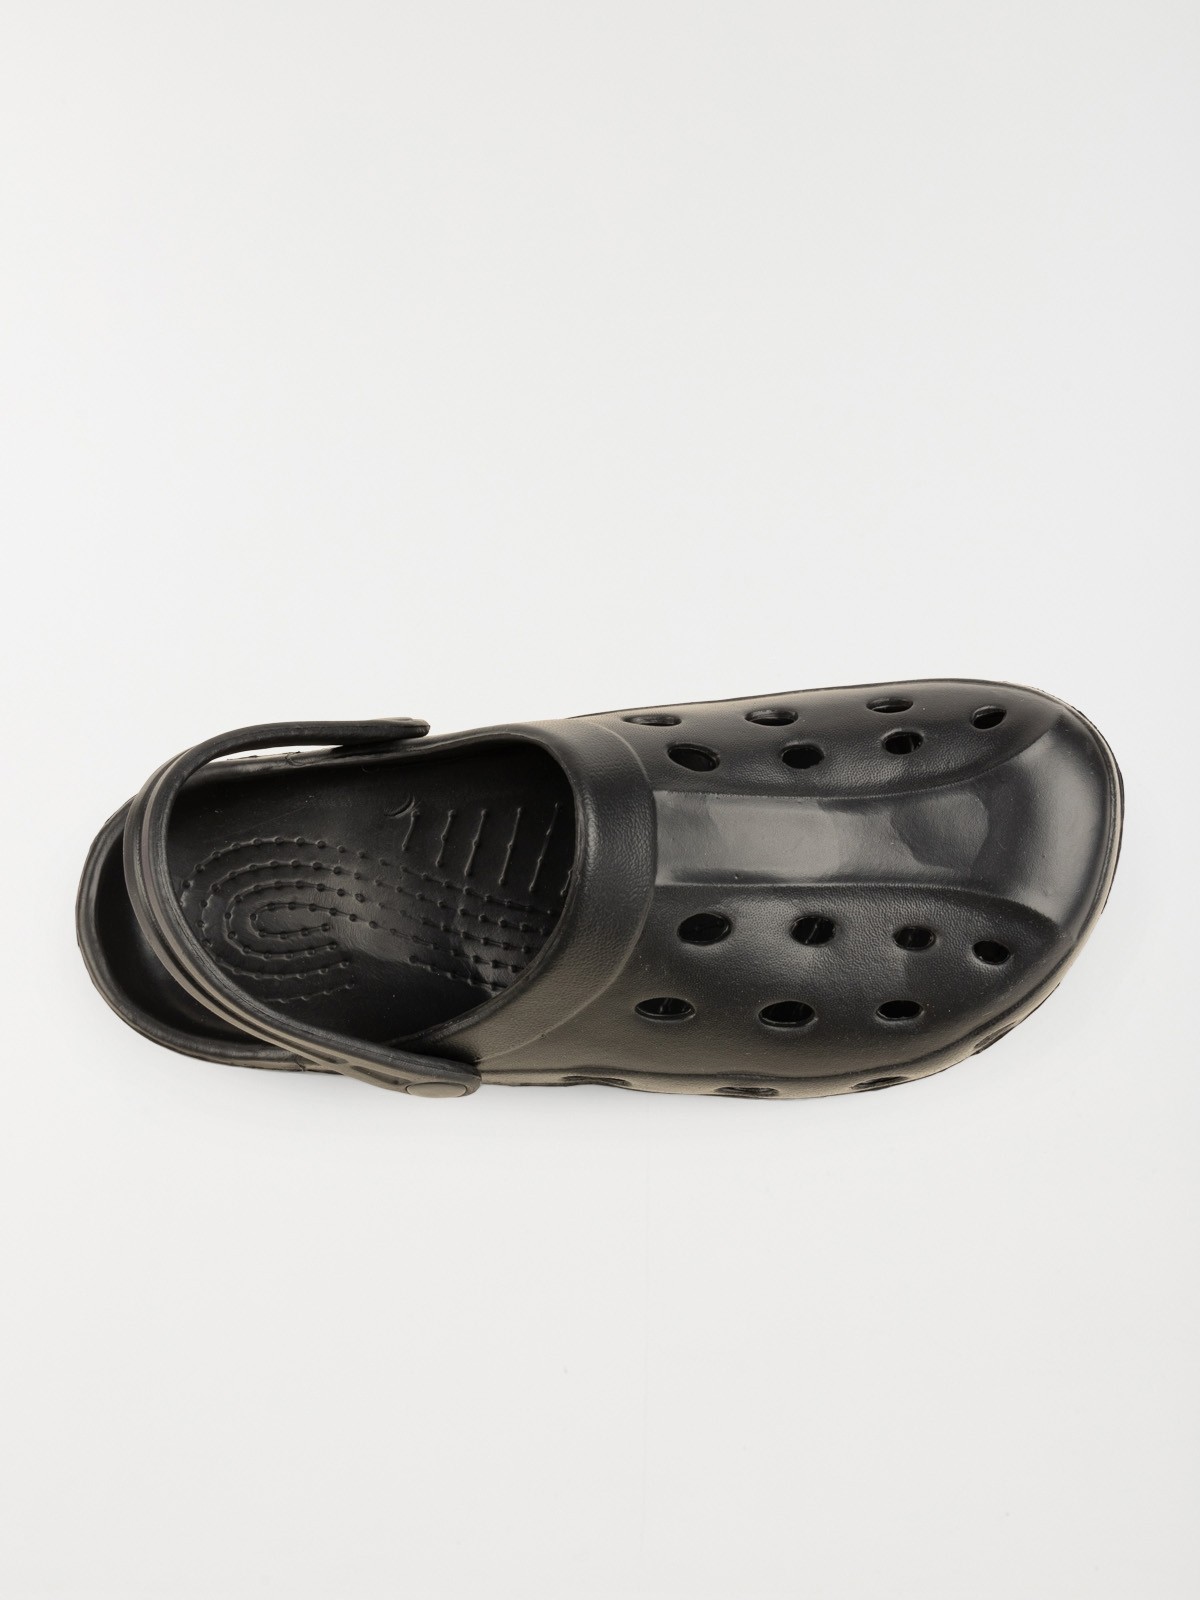 Chaussures de sport homme noir (40-46) - DistriCenter